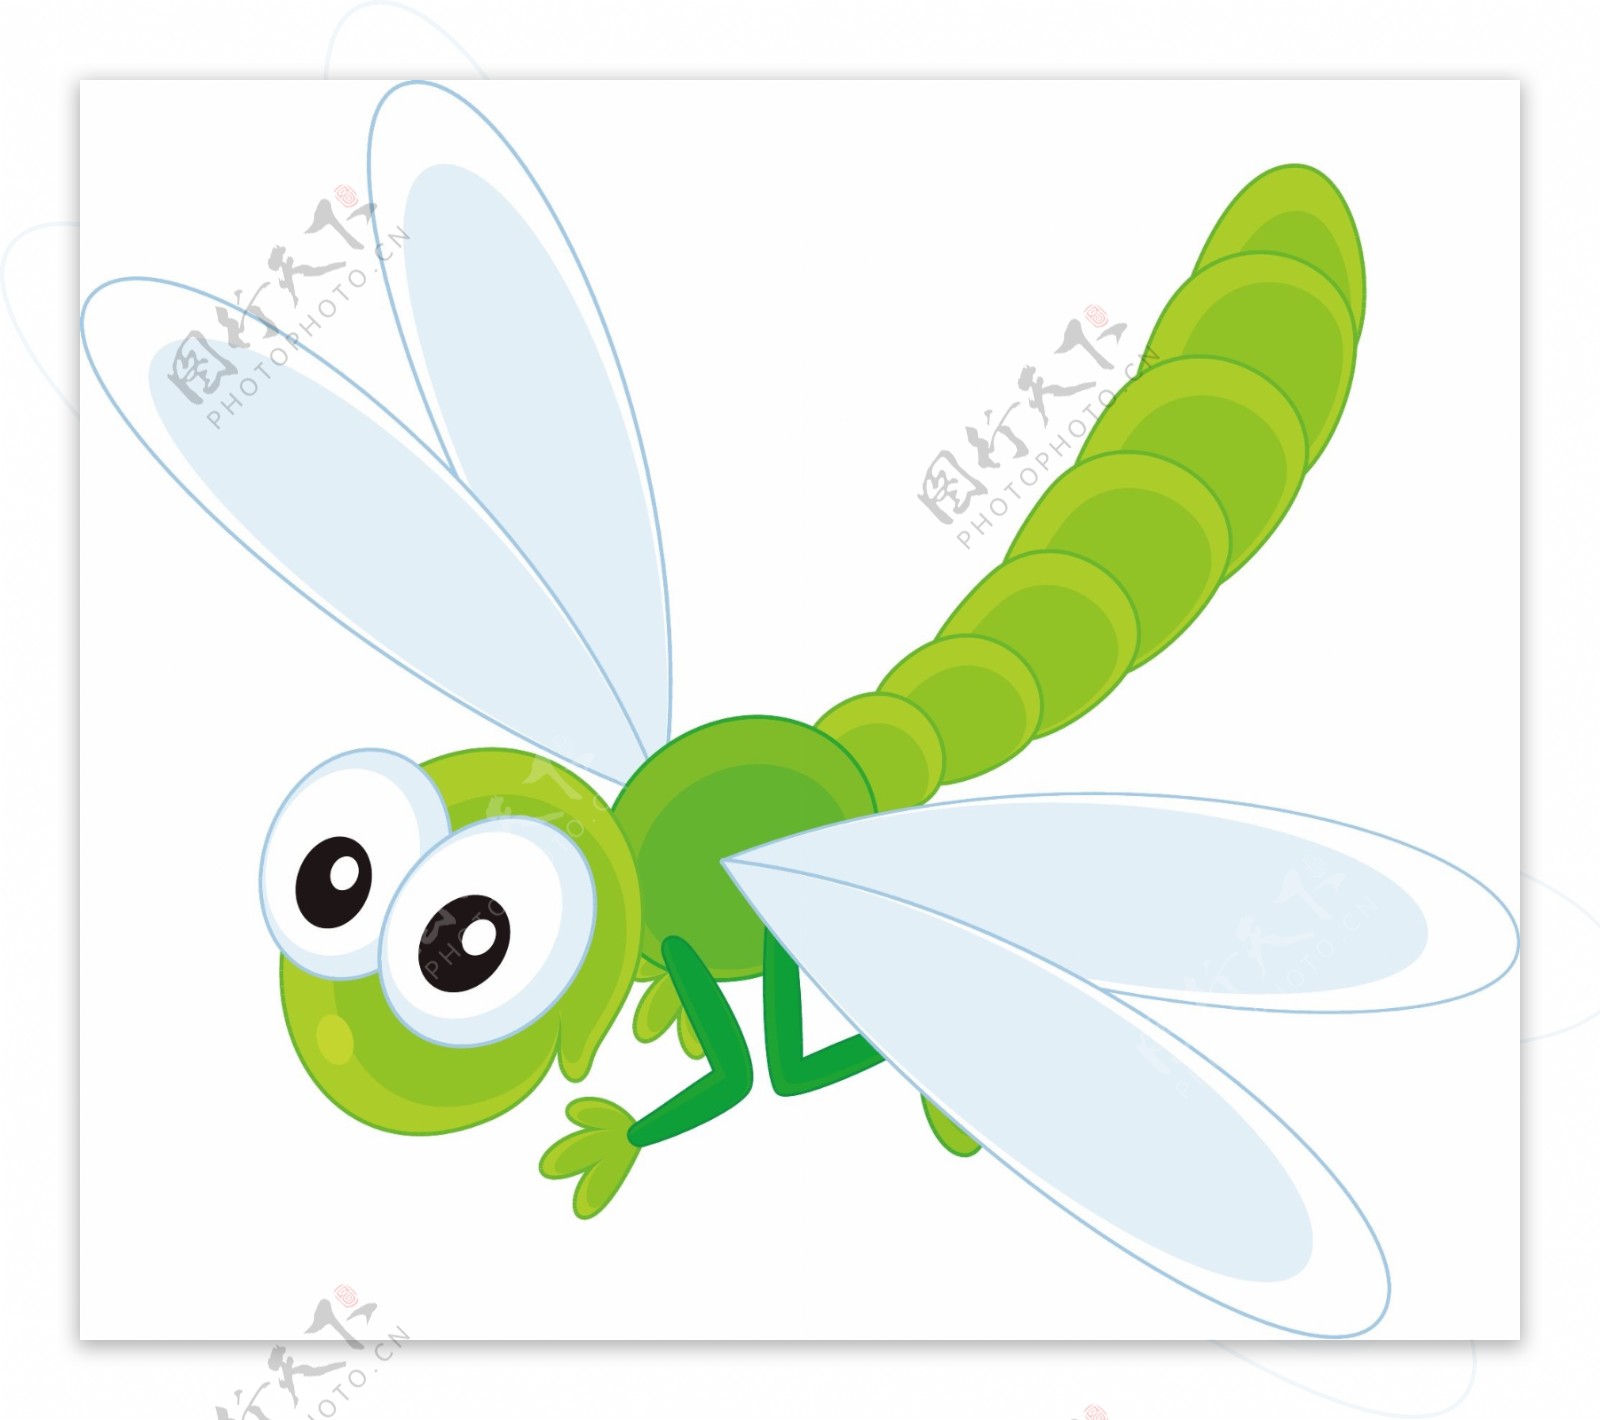 白色背景中的可爱蜻蜓卡通人物 向量例证. 插画 包括有 吉祥人, 庭院, 颜色, 夹子, 自然, 装饰 - 207178268